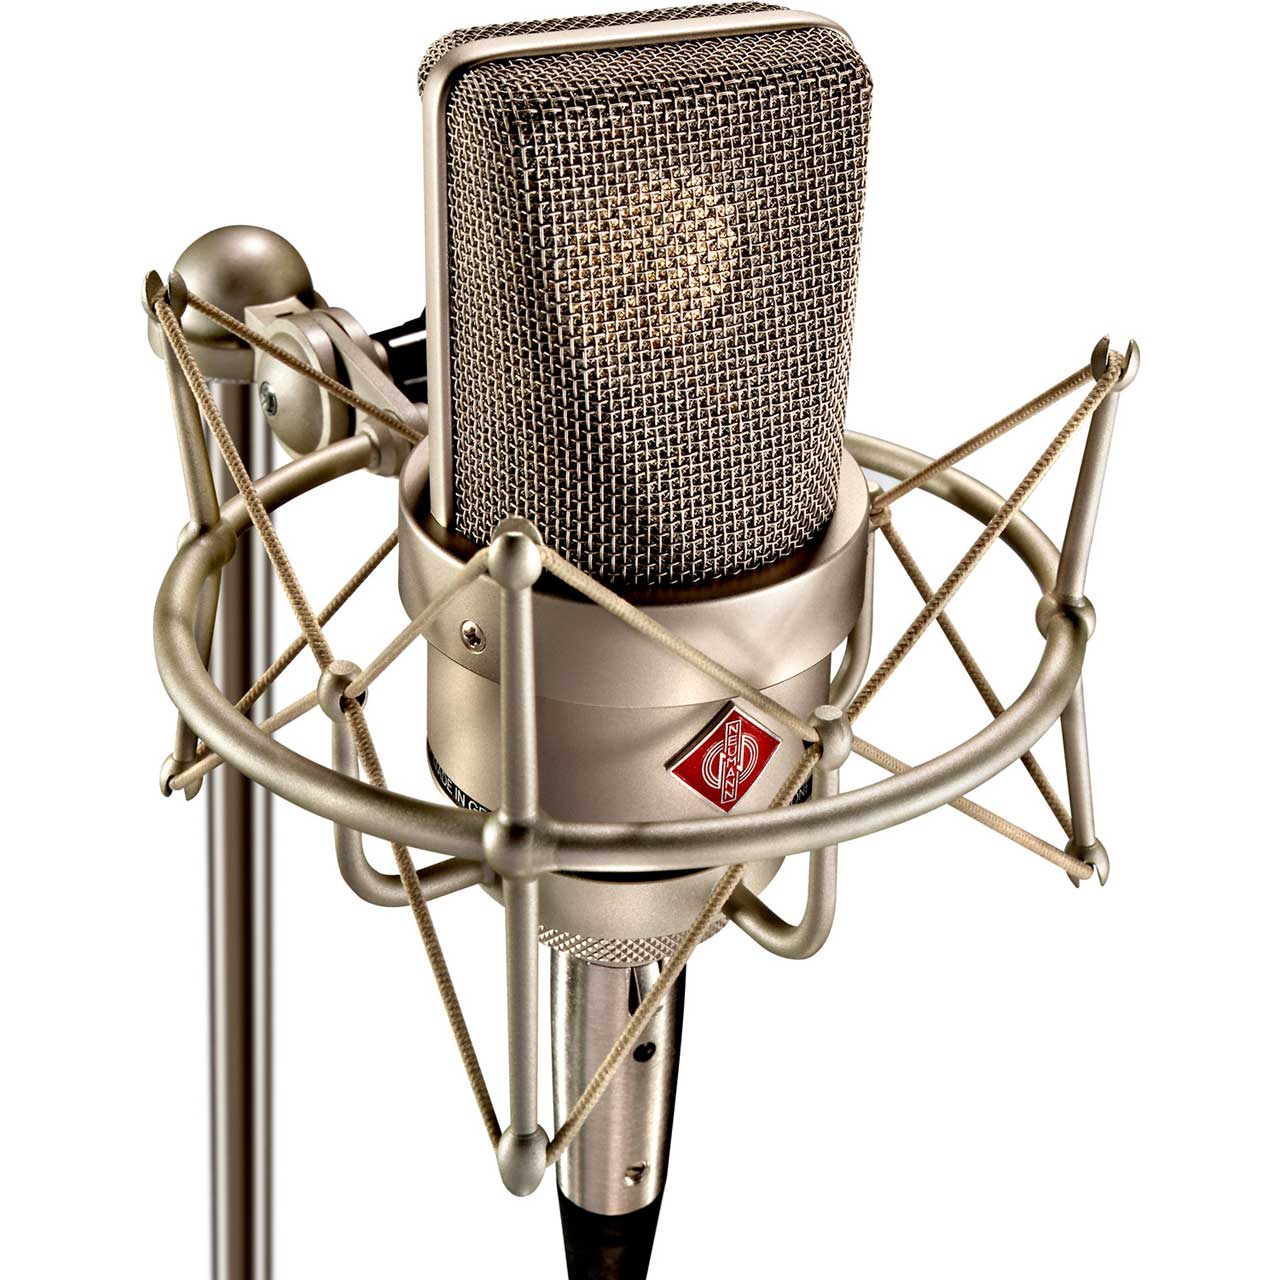 Neumann TLM103 Cardioid Studio Condenser Microphone - Nickel